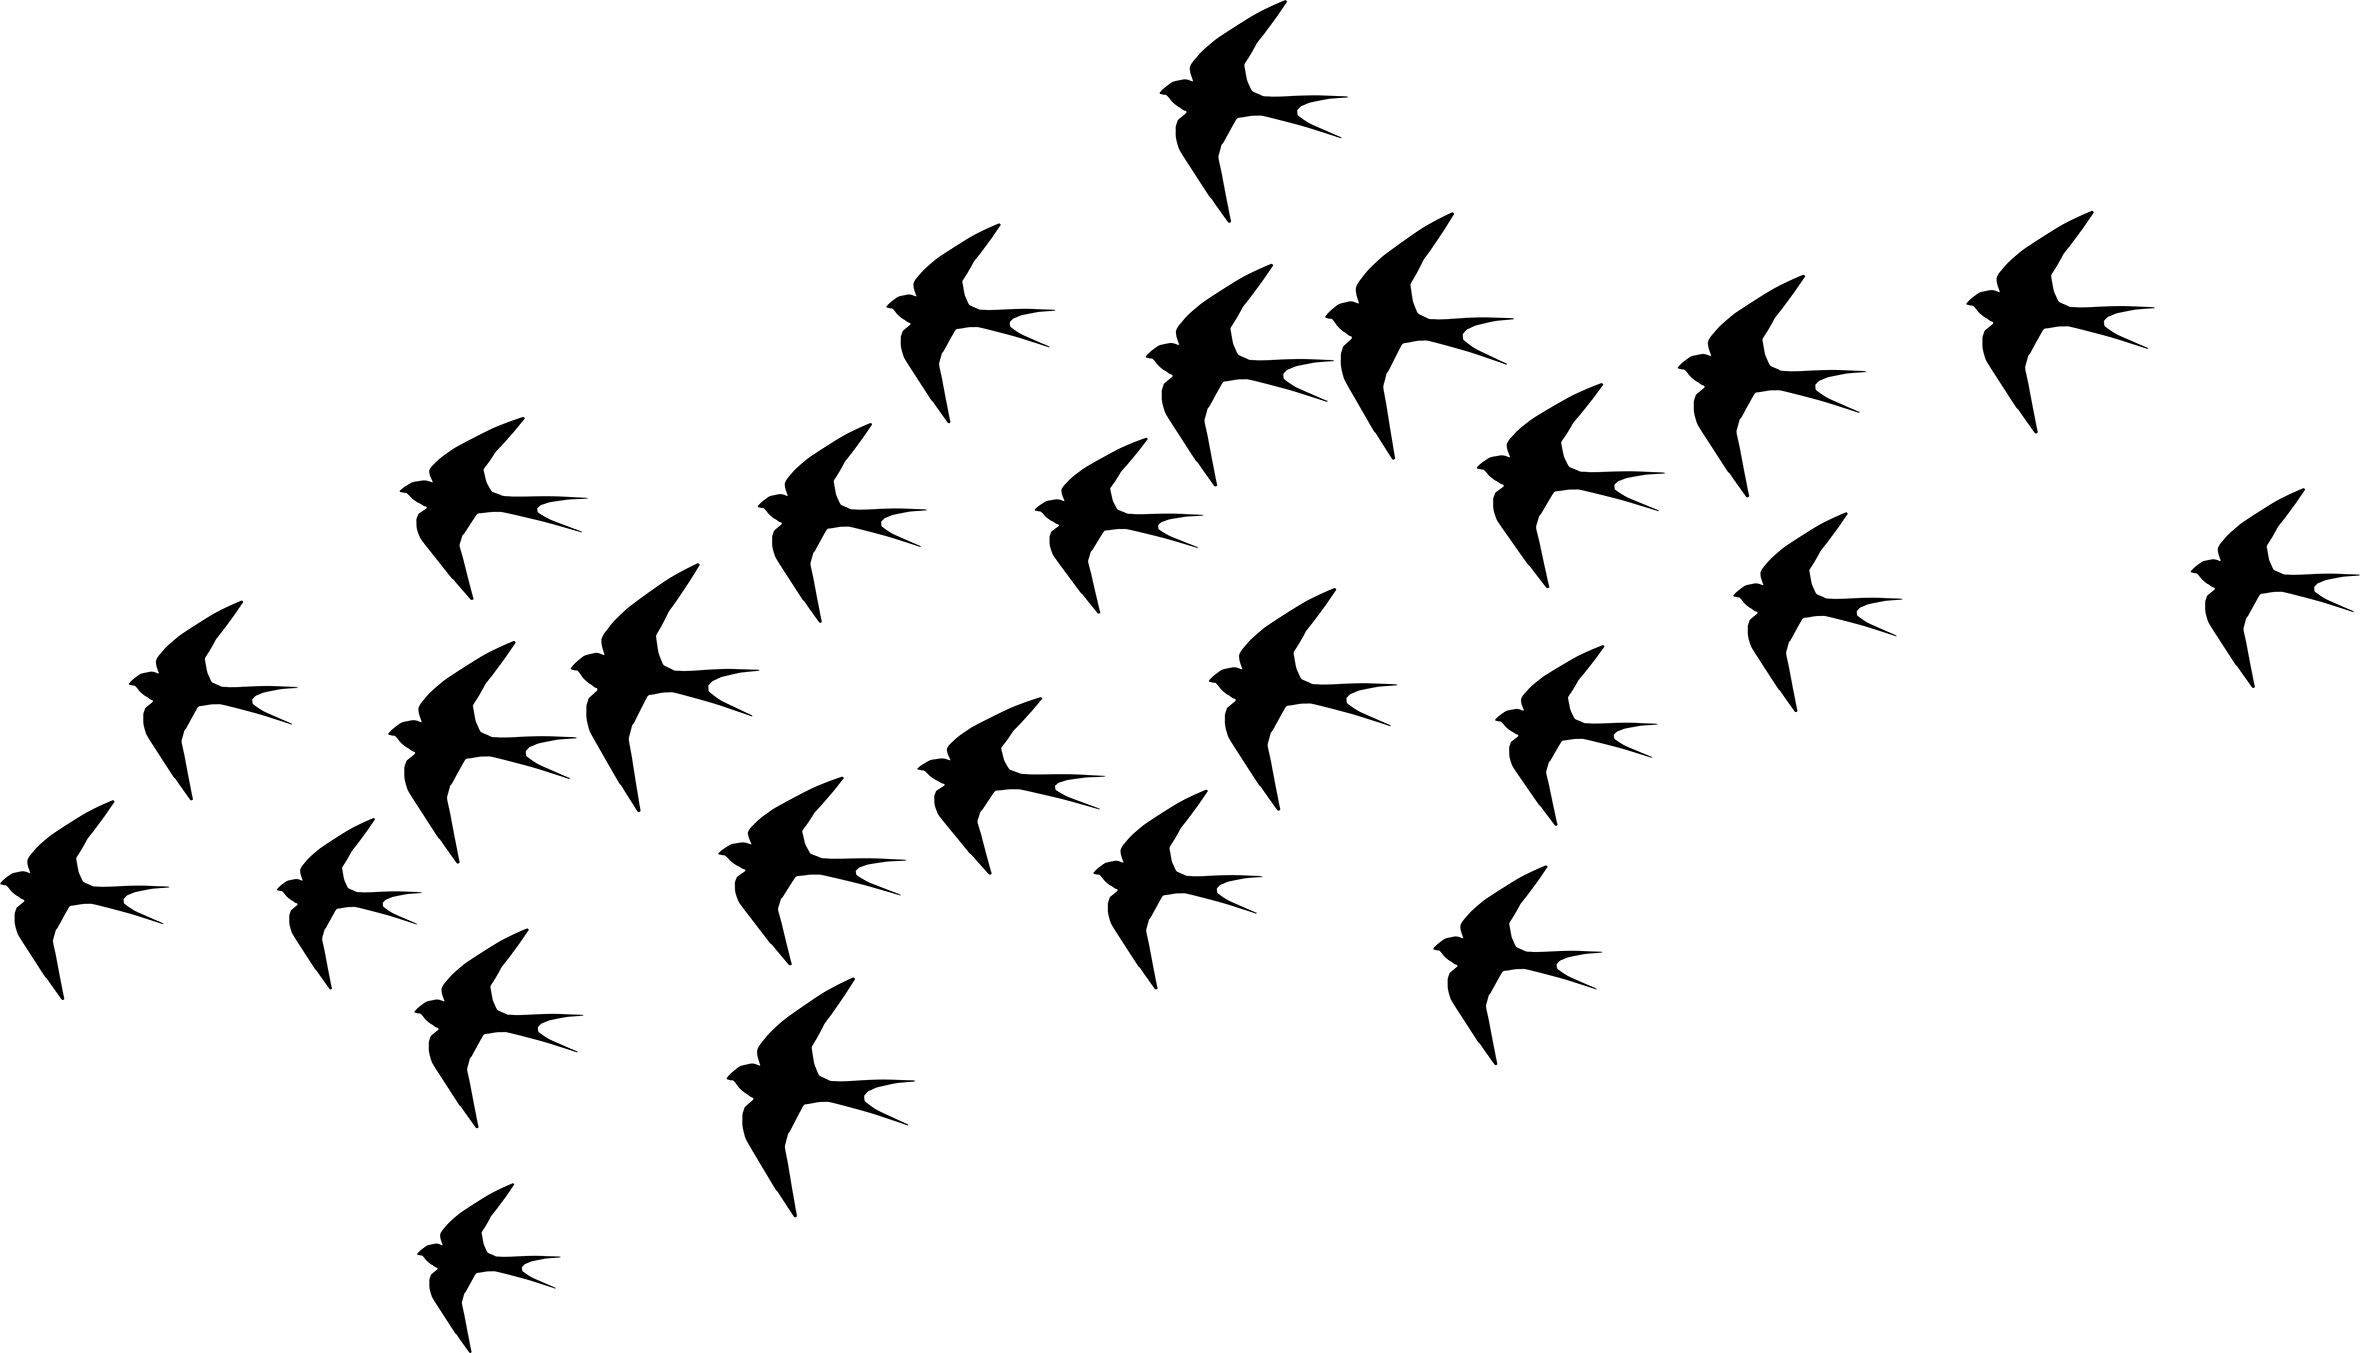 502 - Swallows